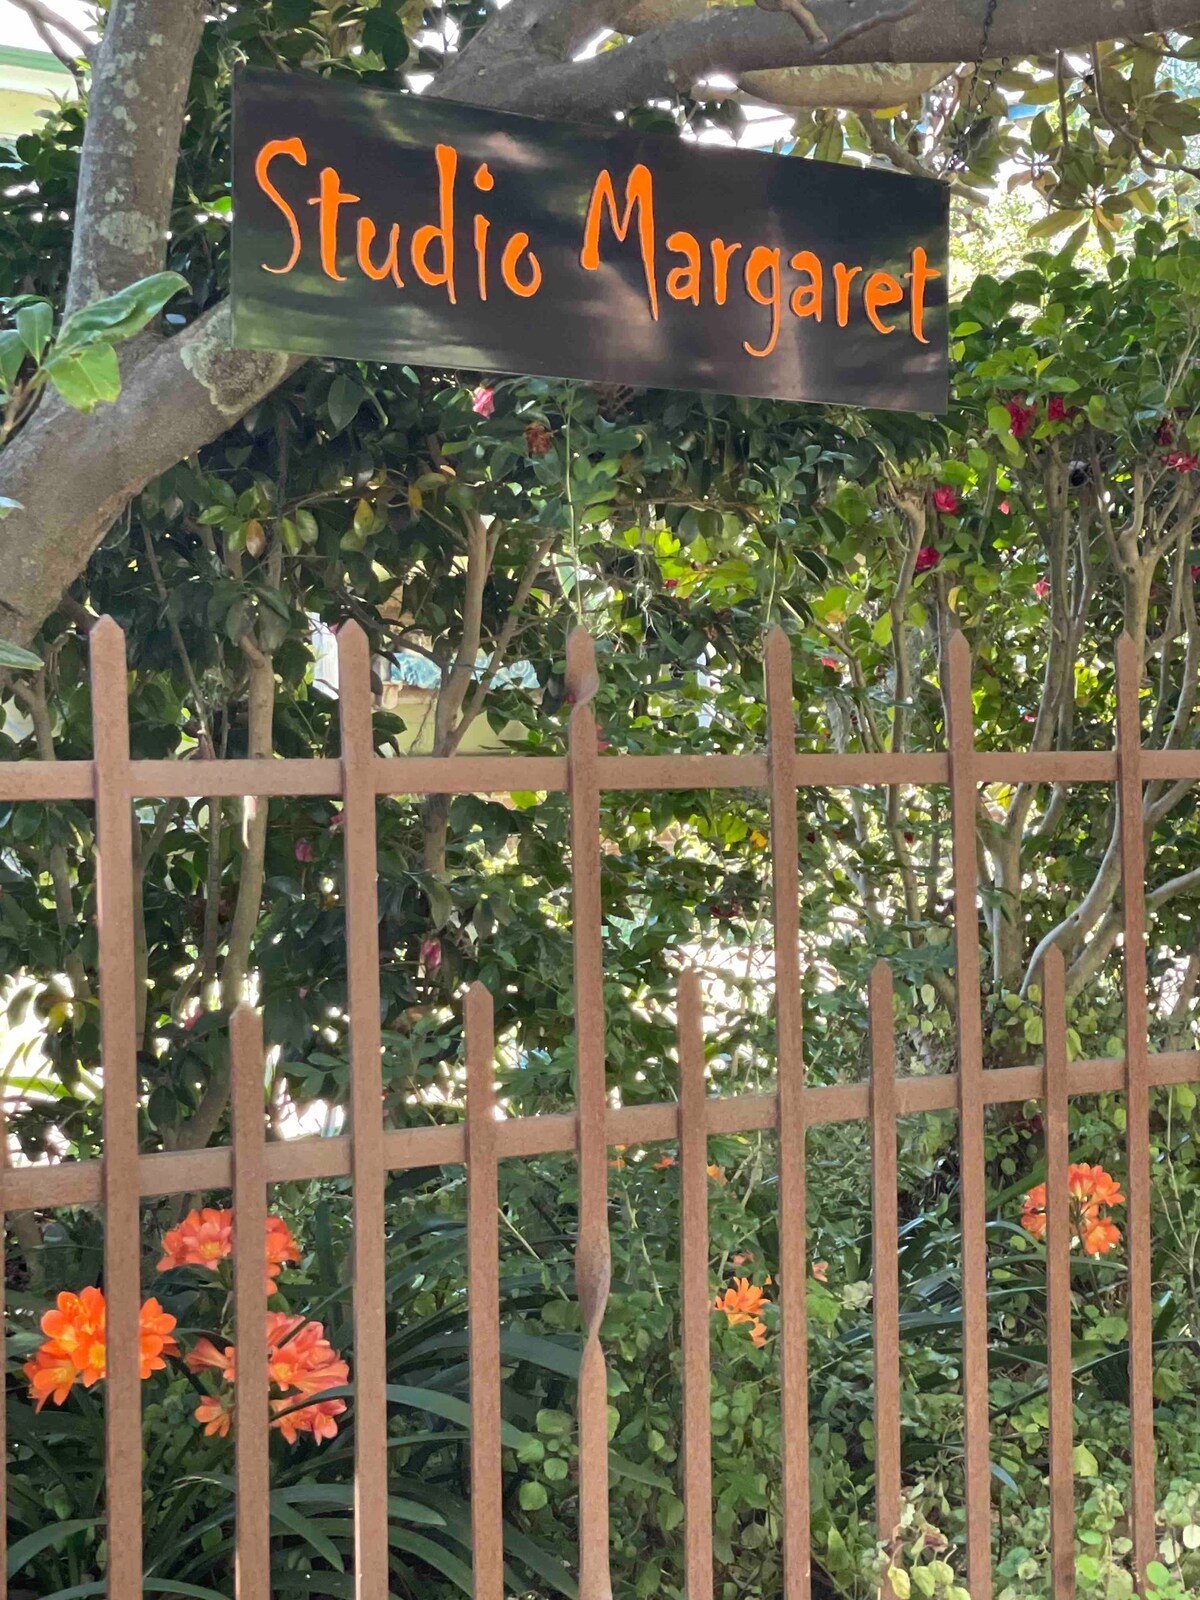 Studio Margaret.  Lovely position!